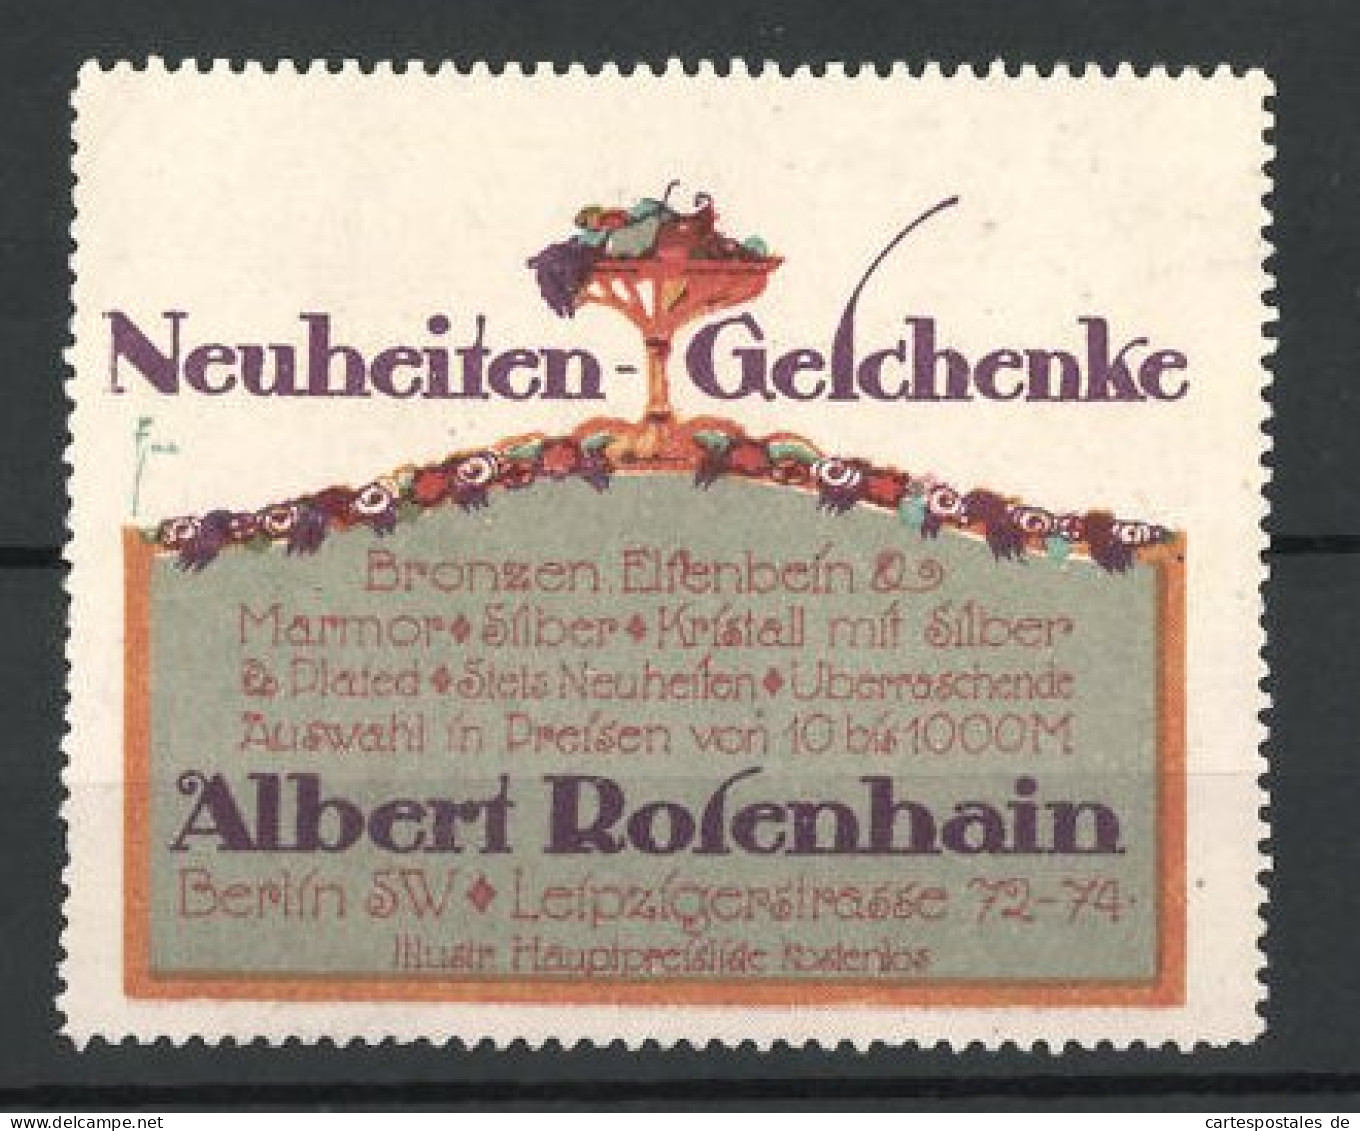 Reklamemarke Neuheiten-Geschenke Von Albert Rosenhain, Leipzigerstrasse 72-74, Berlin  - Cinderellas